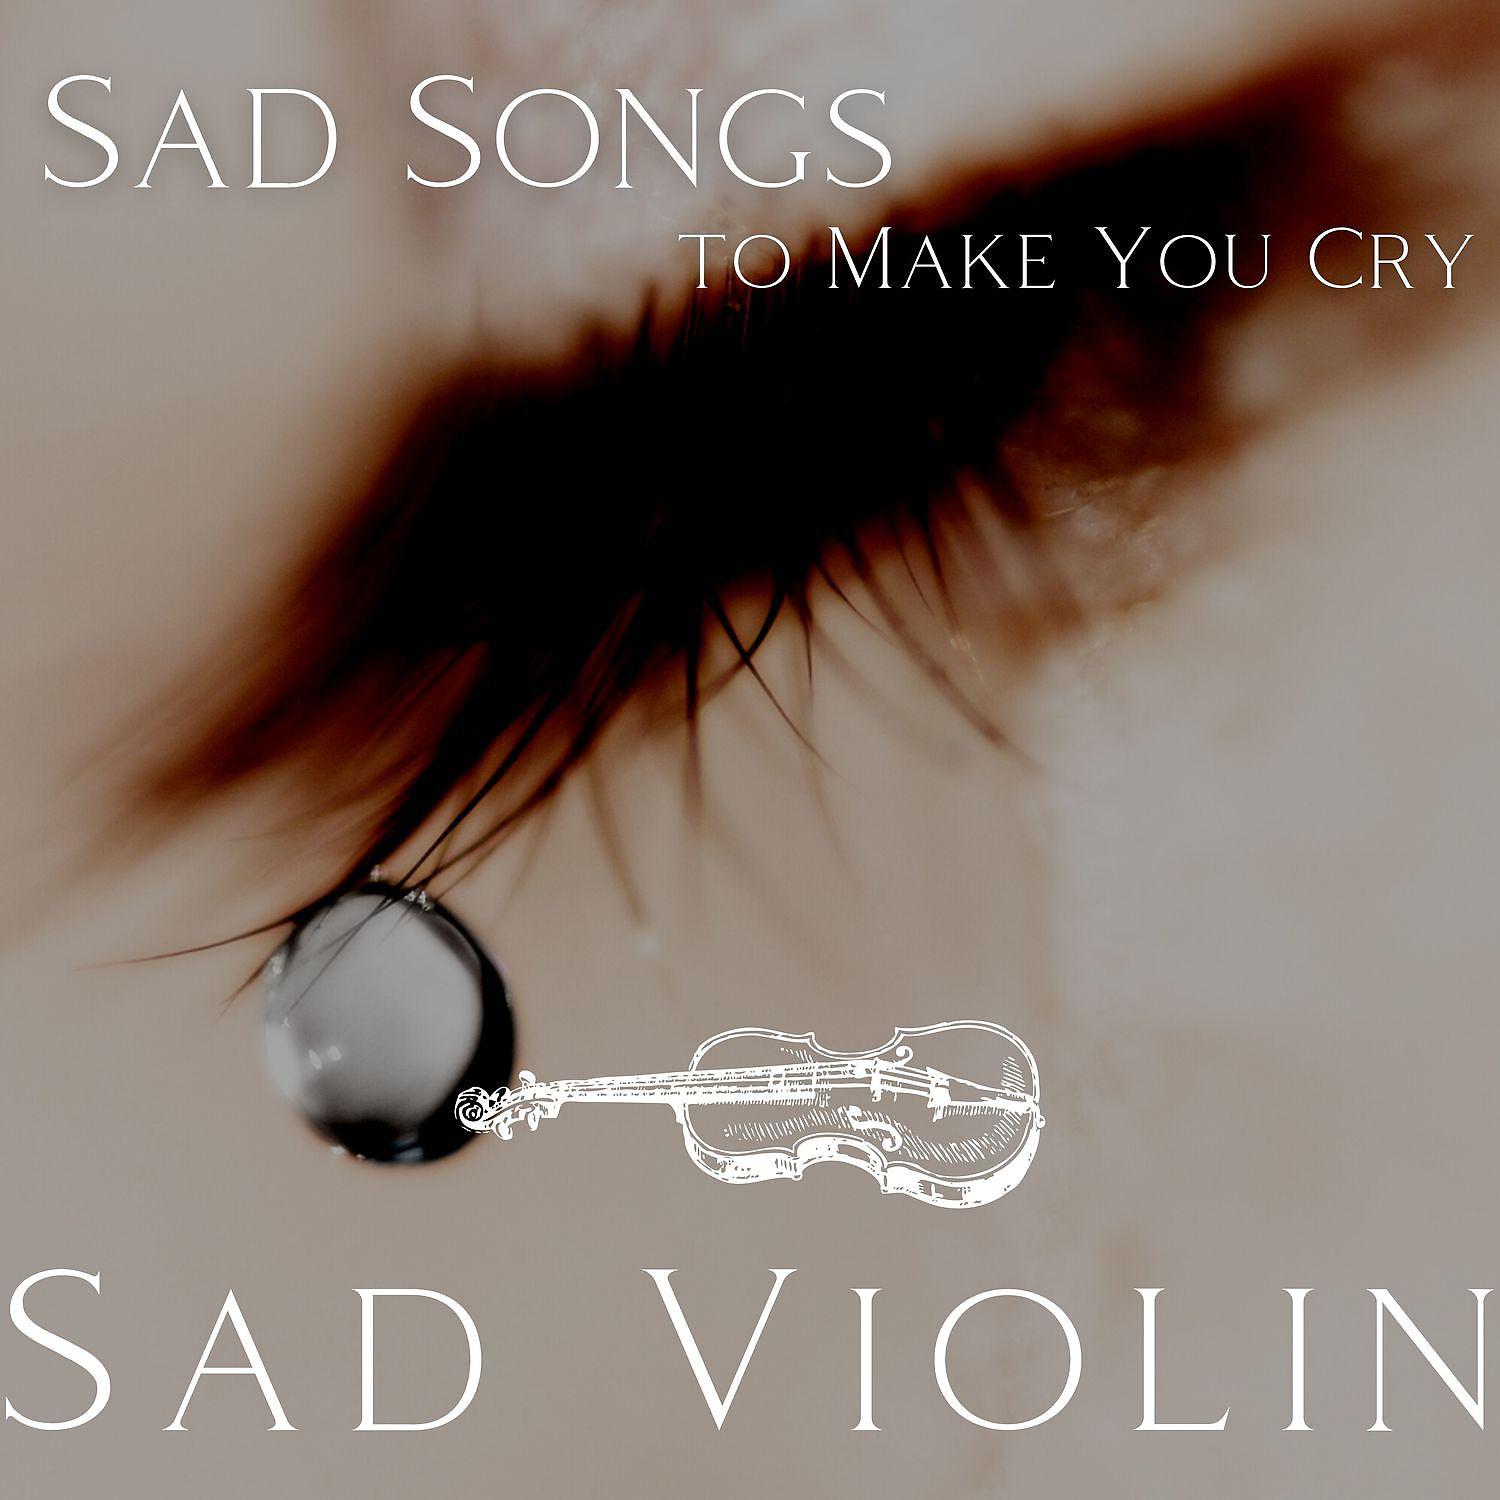 Sad violin meme. Sad Song скрипка. Sad Songs to Cry to Sad. Sad Violin (the meme one). Make you Cry.